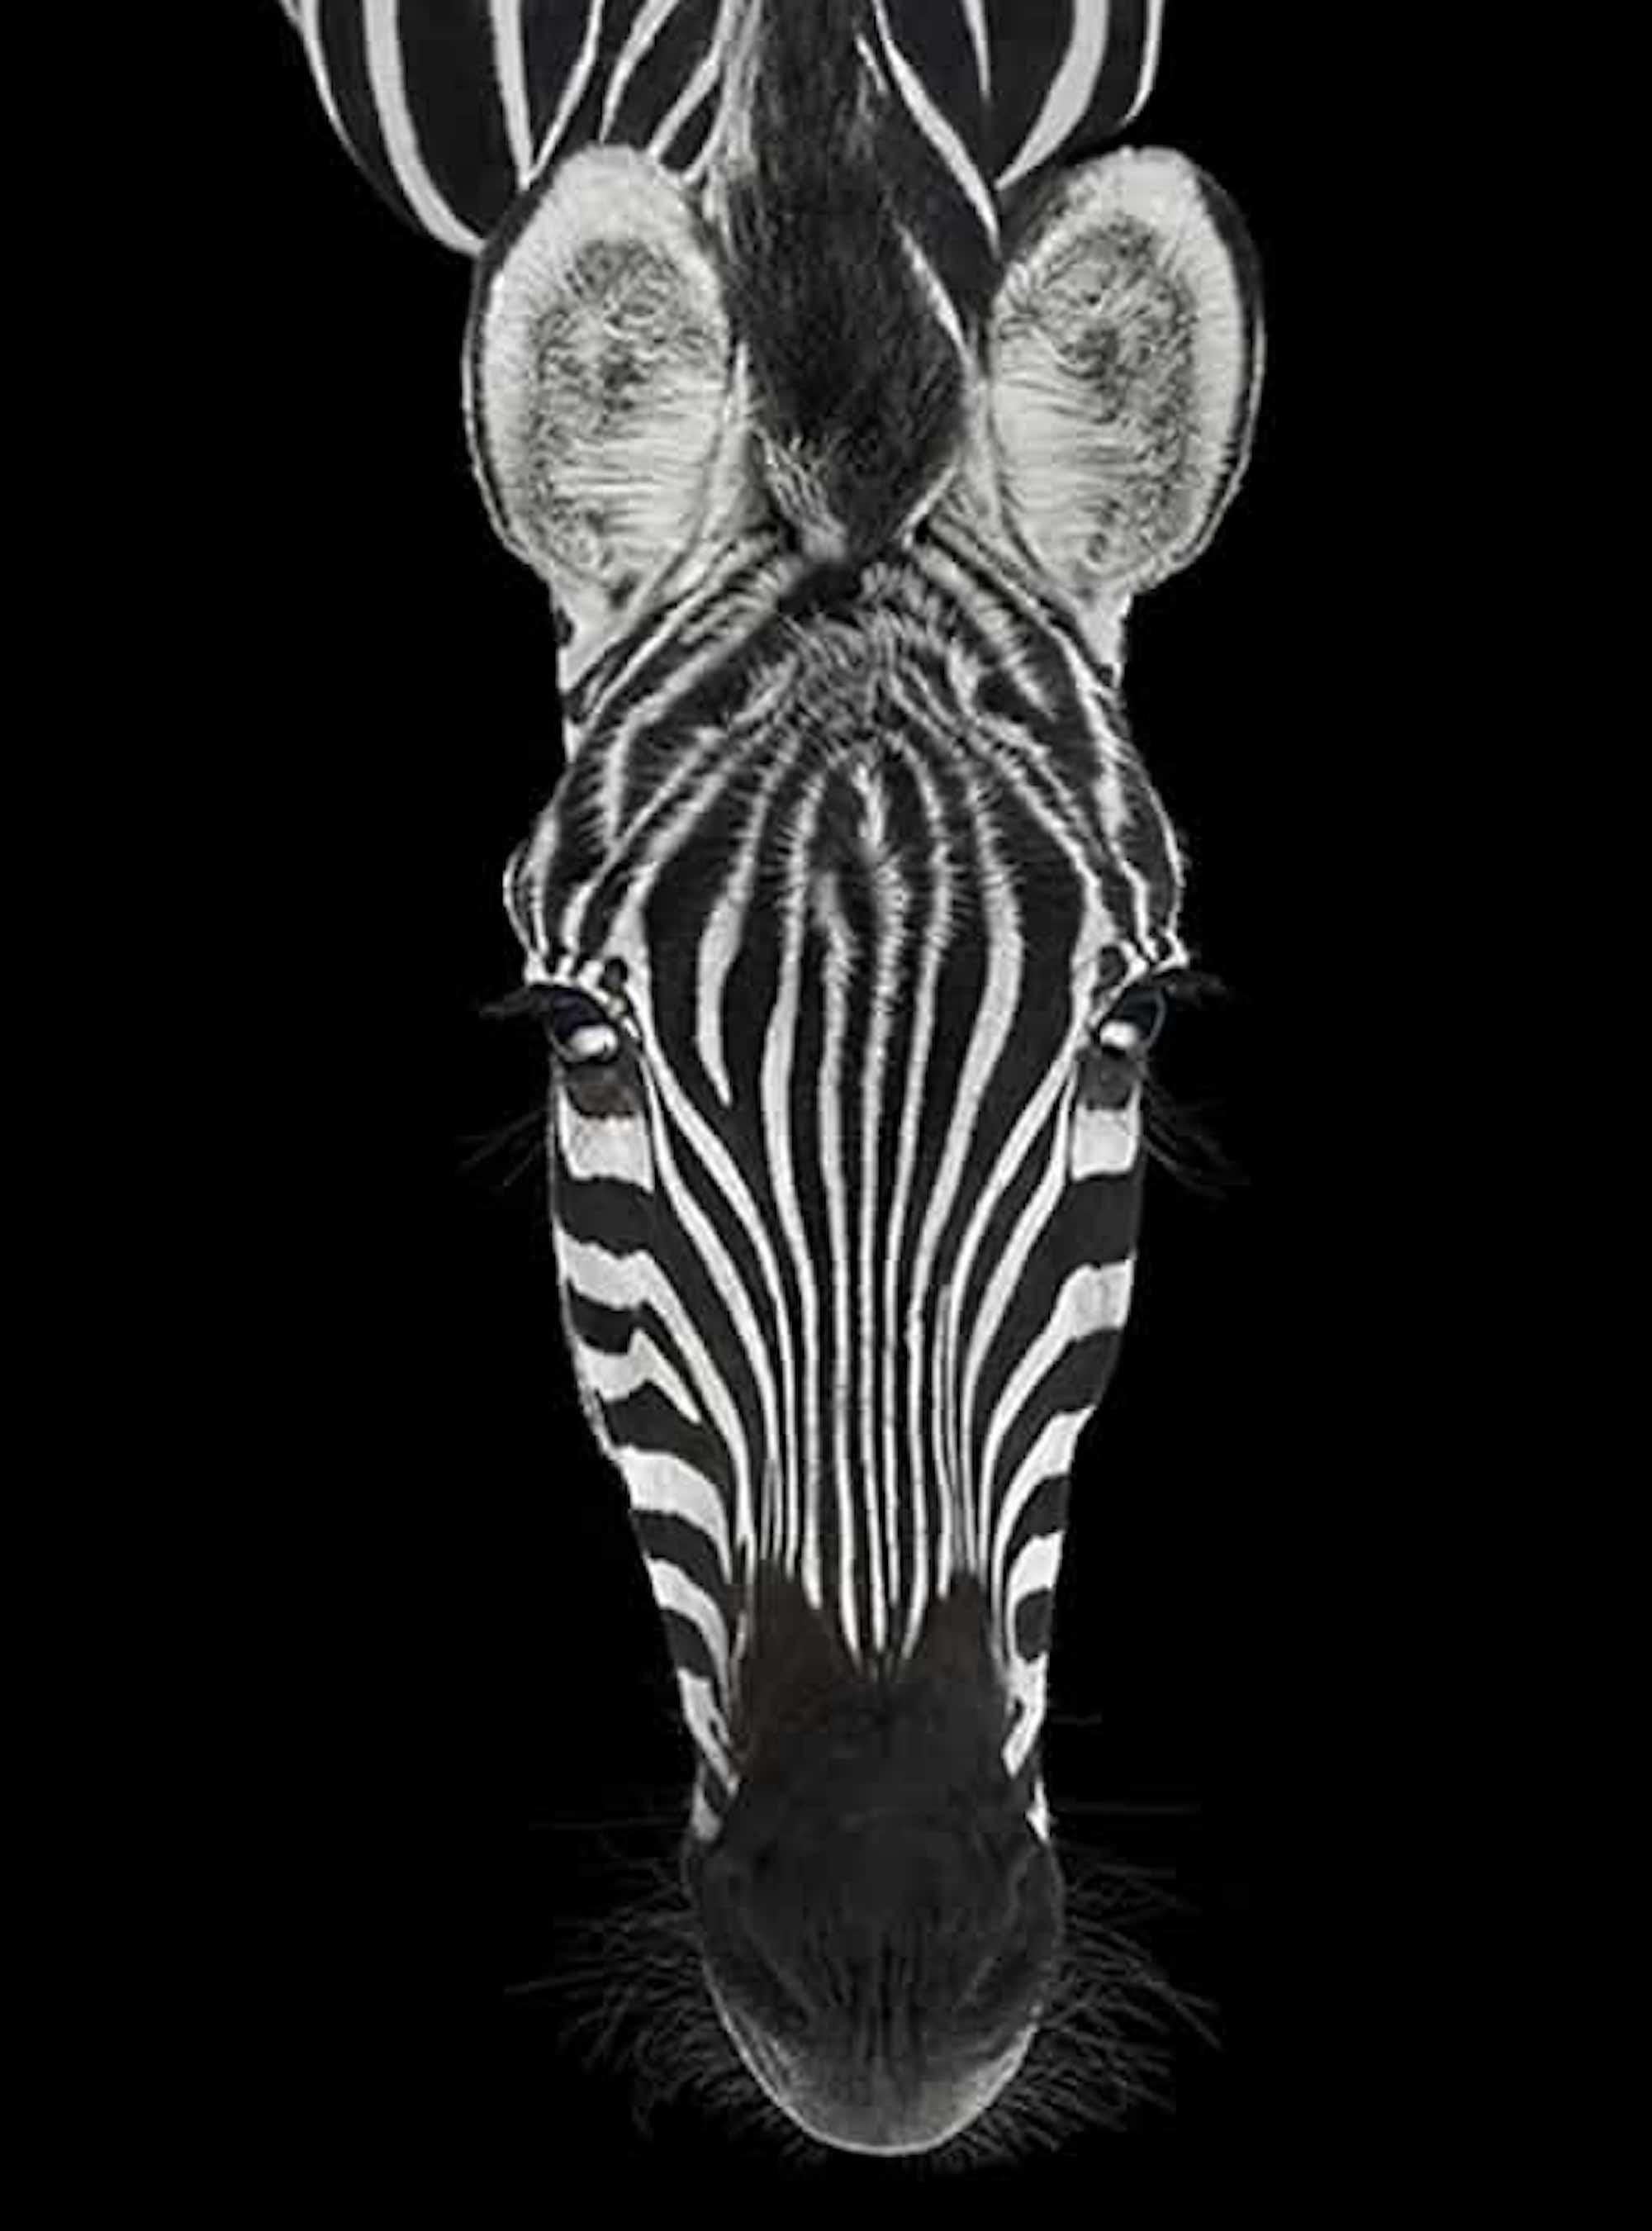 Zebra #3 by Brad Wilson - Animal portrait photography For Sale 2